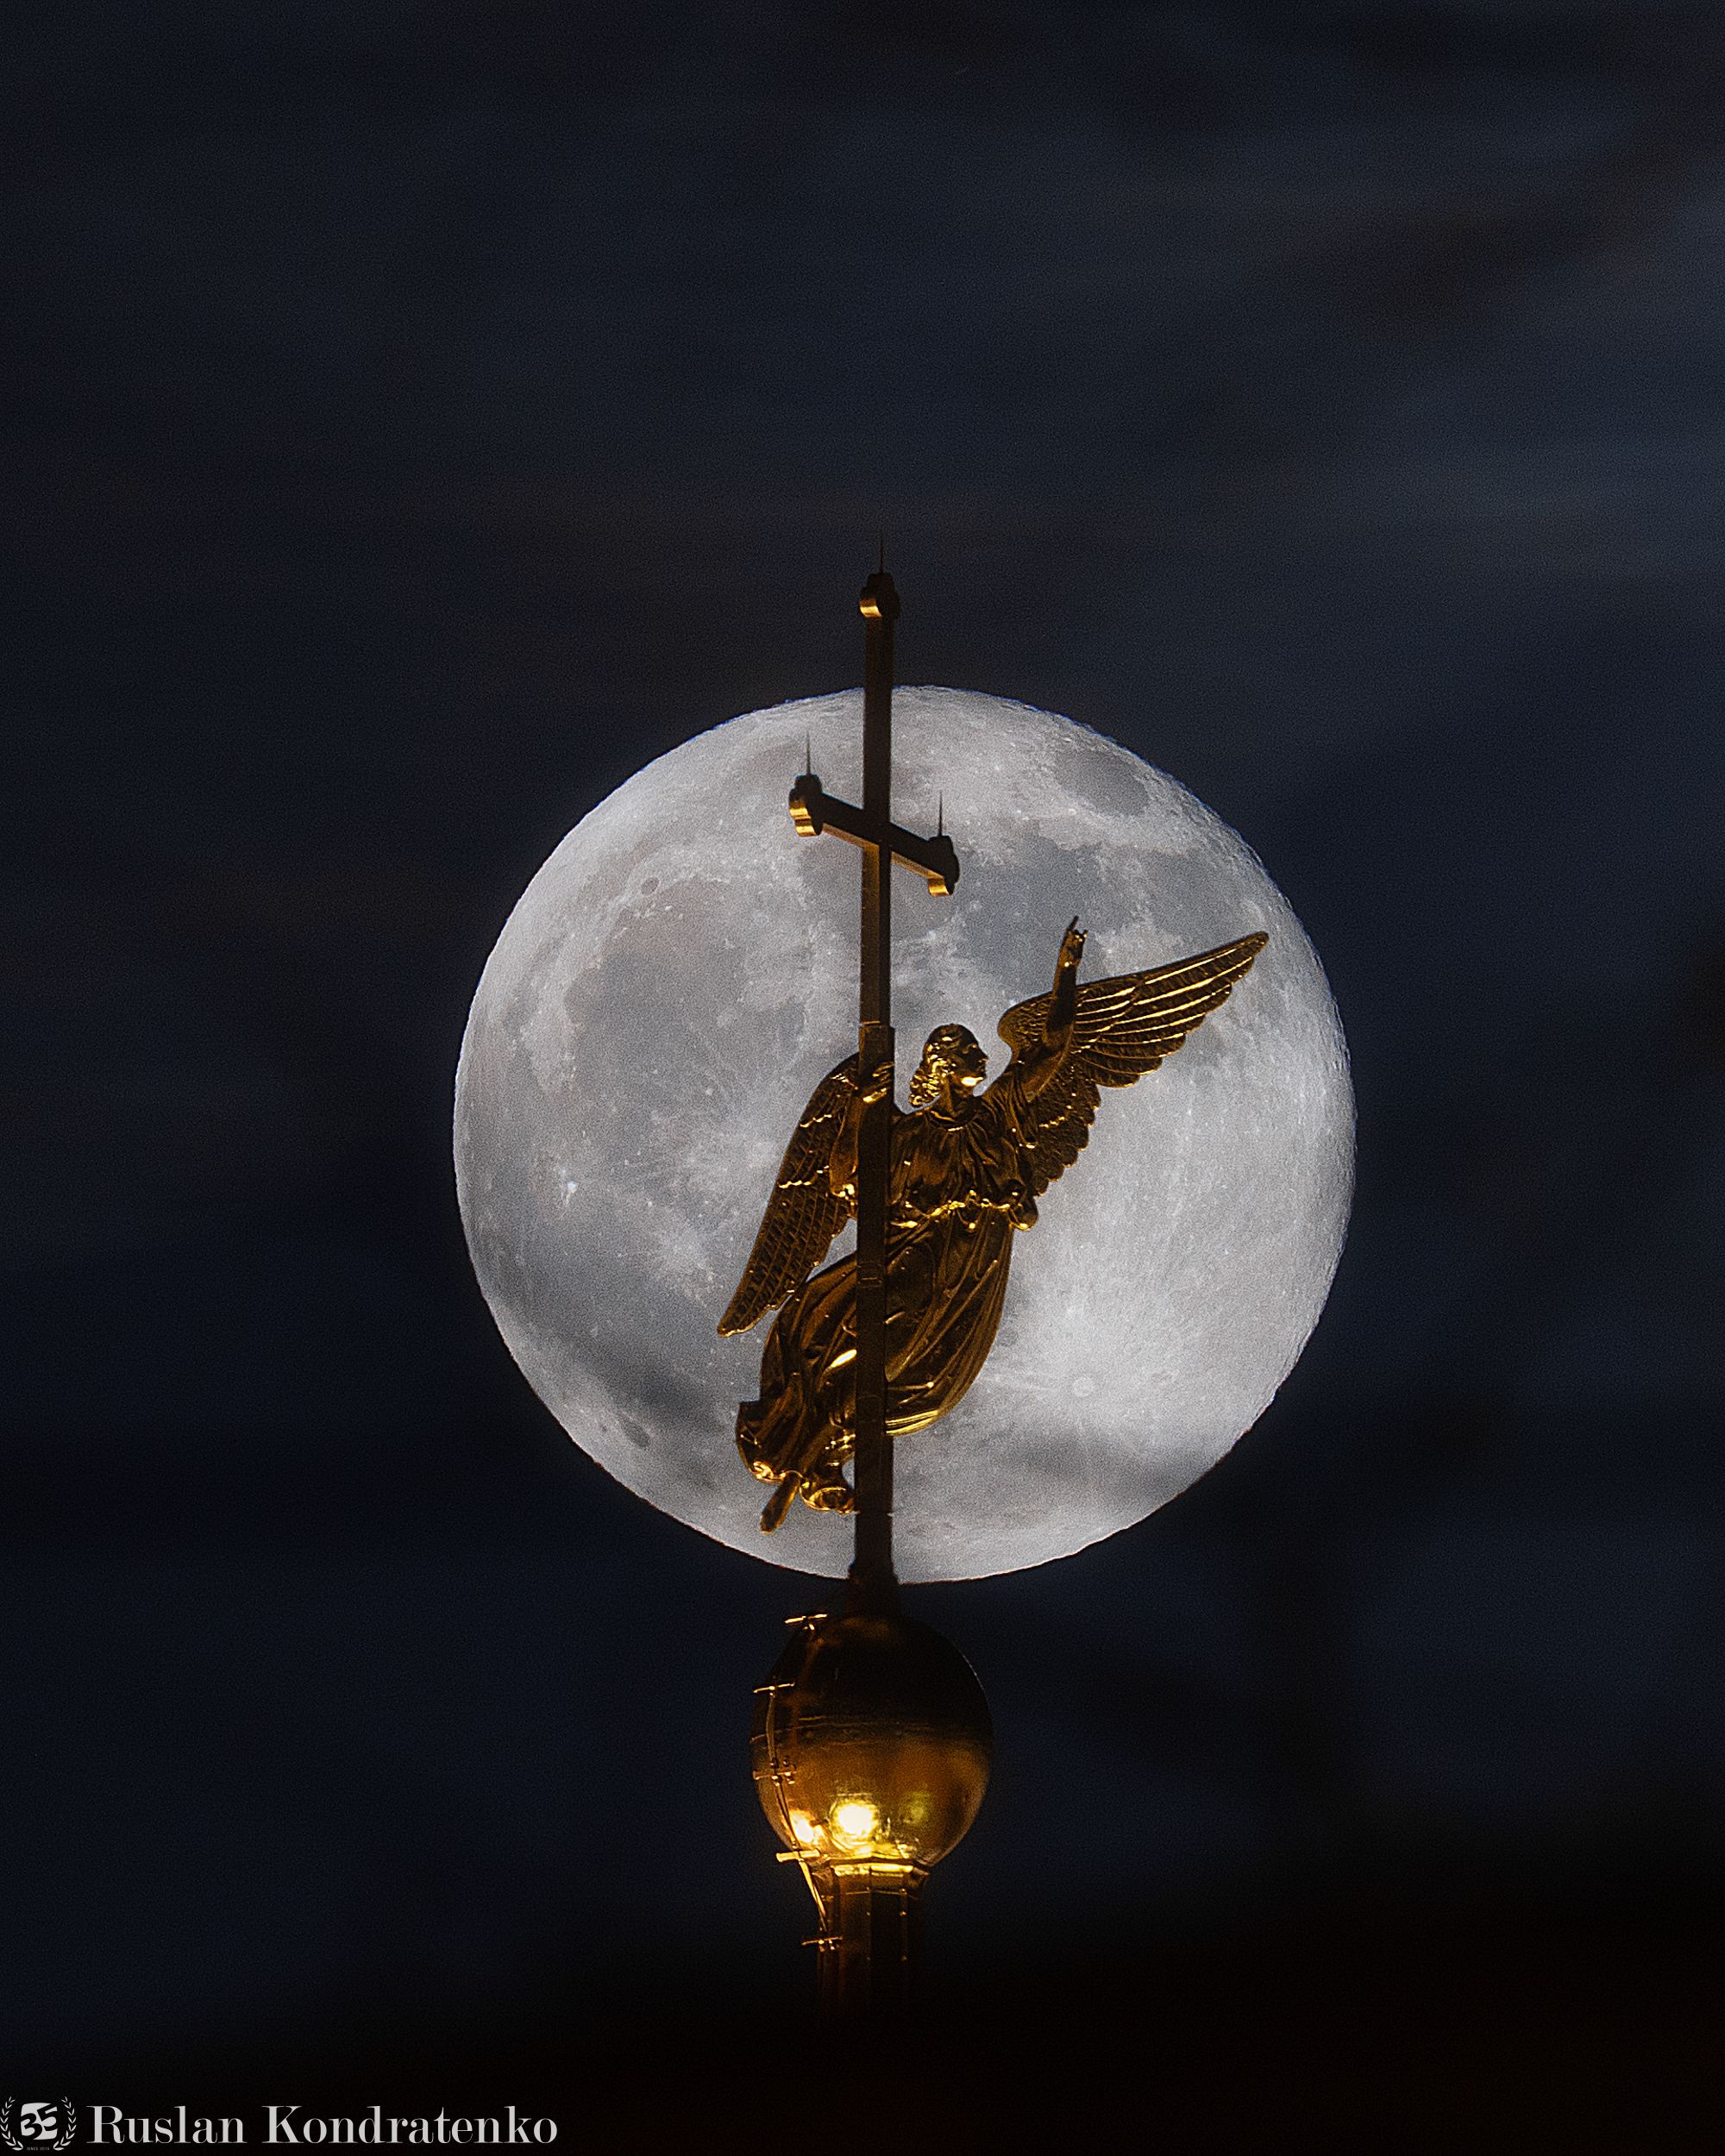 петропавловский собор, луна, ангел, прострел, санкт-петербург, time blending, композитная фотография, Руслан Кондратенко